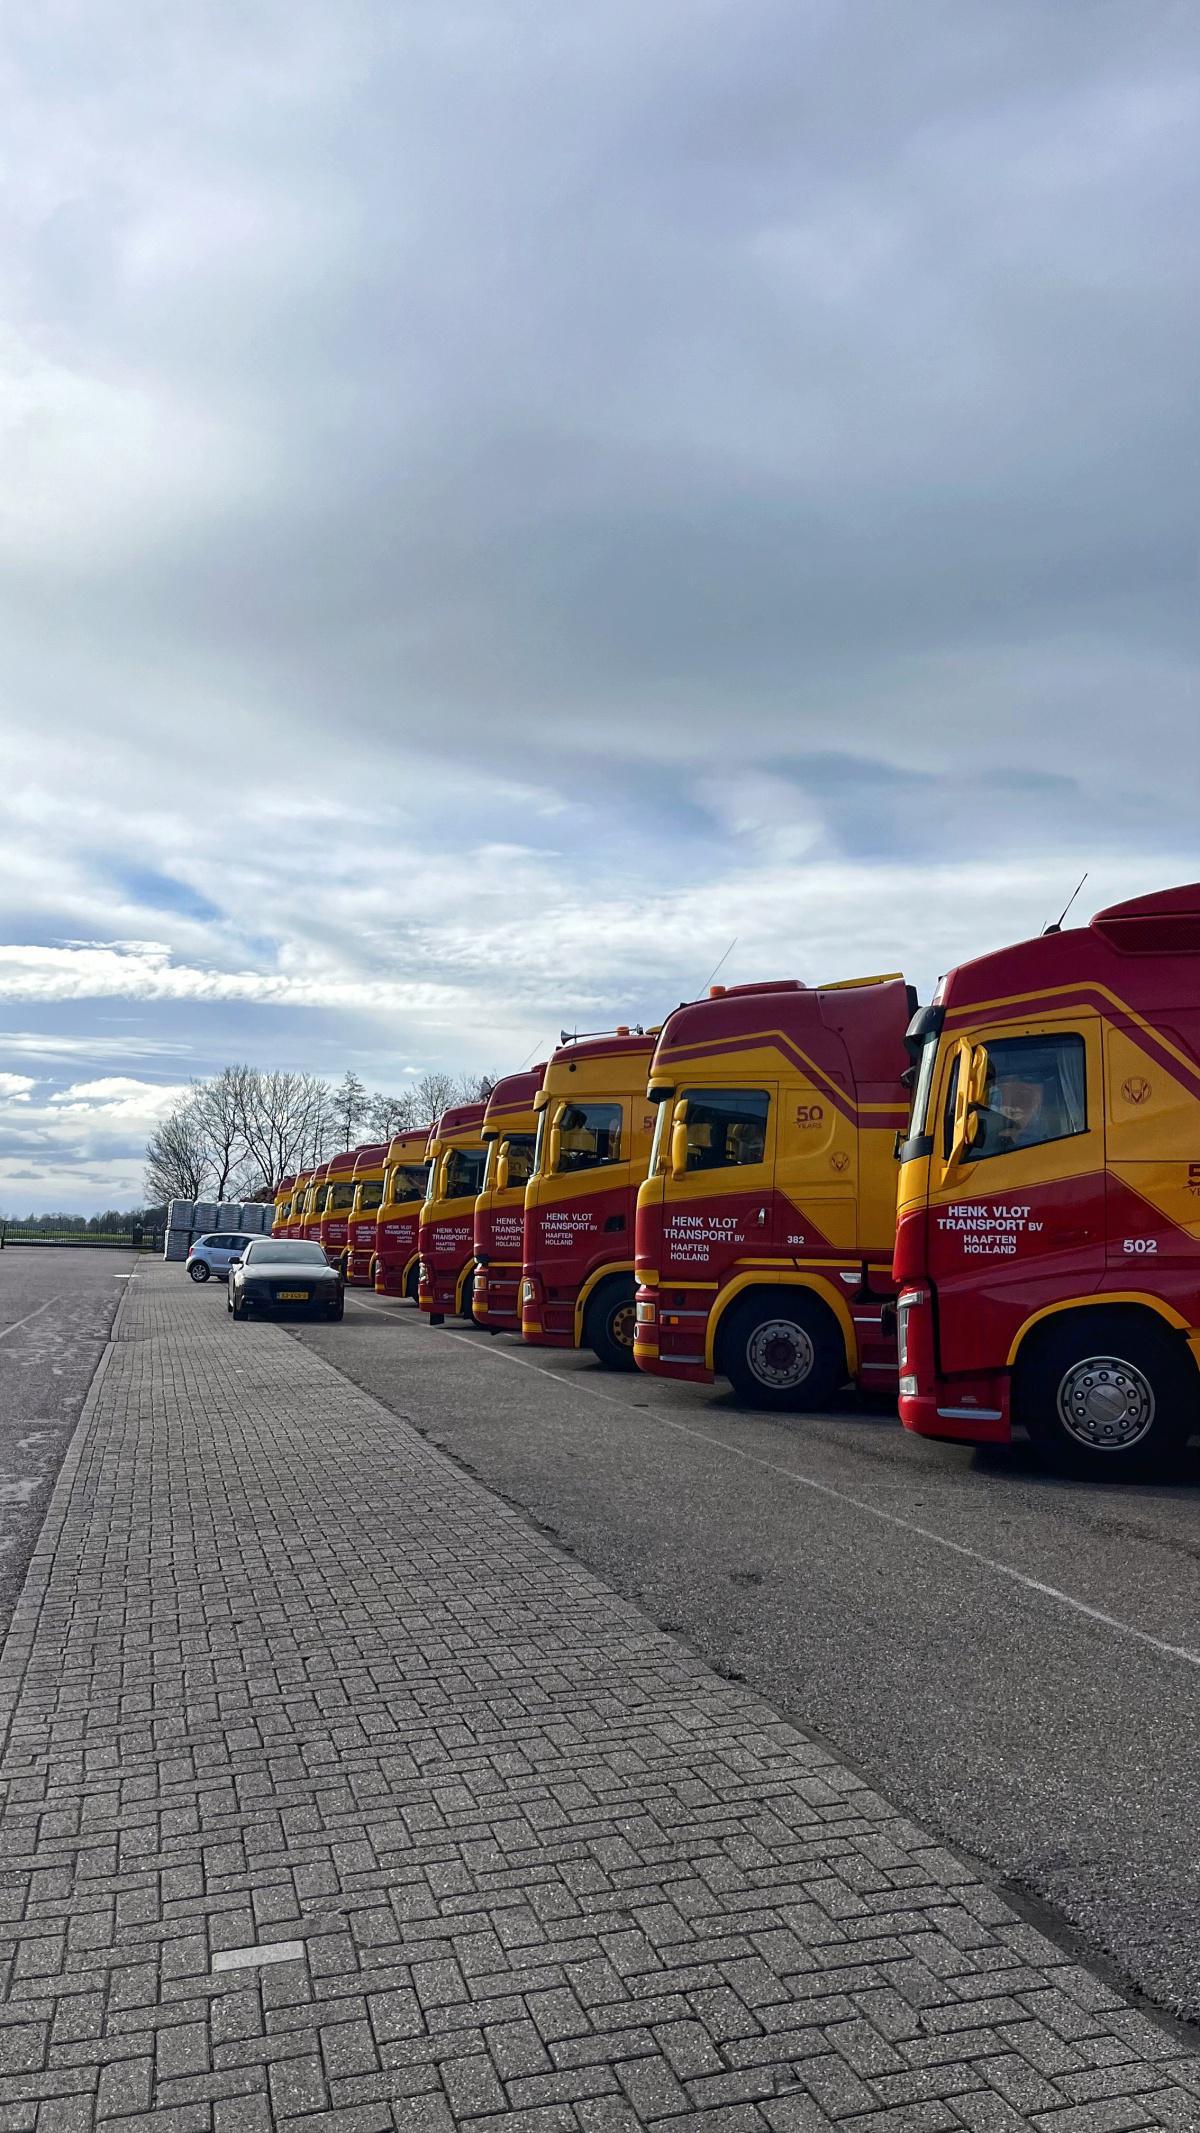 Einstieg in Straßenlogistik: Deymann gründet 2M Logistics und übernimmt Henk Vlot Transport B.V. und Henk Vlot Forwarding B.V.